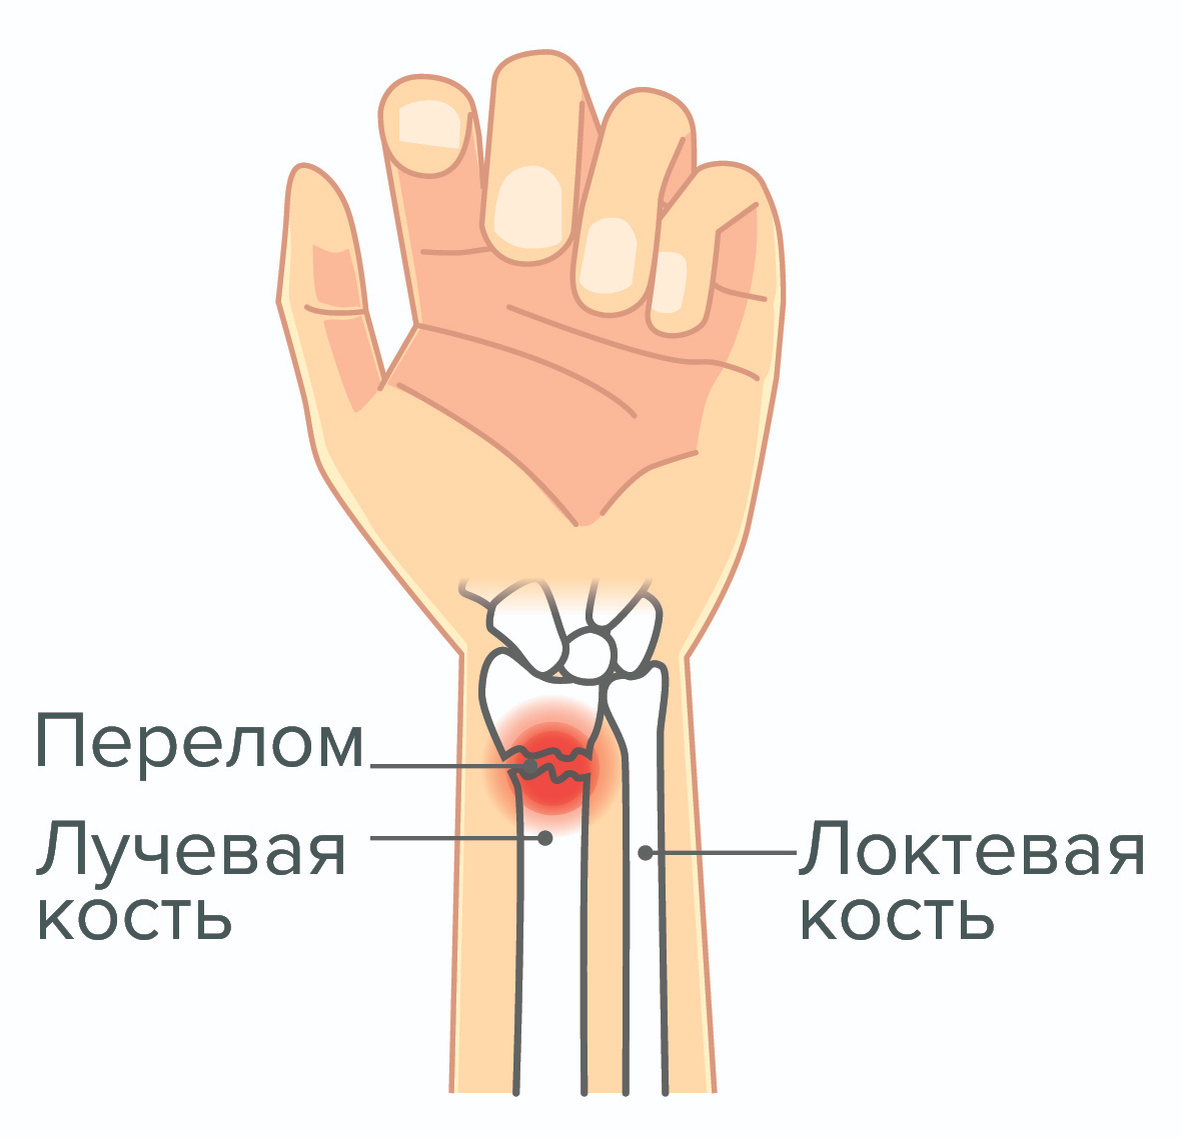 Реабилитация после перелома руки